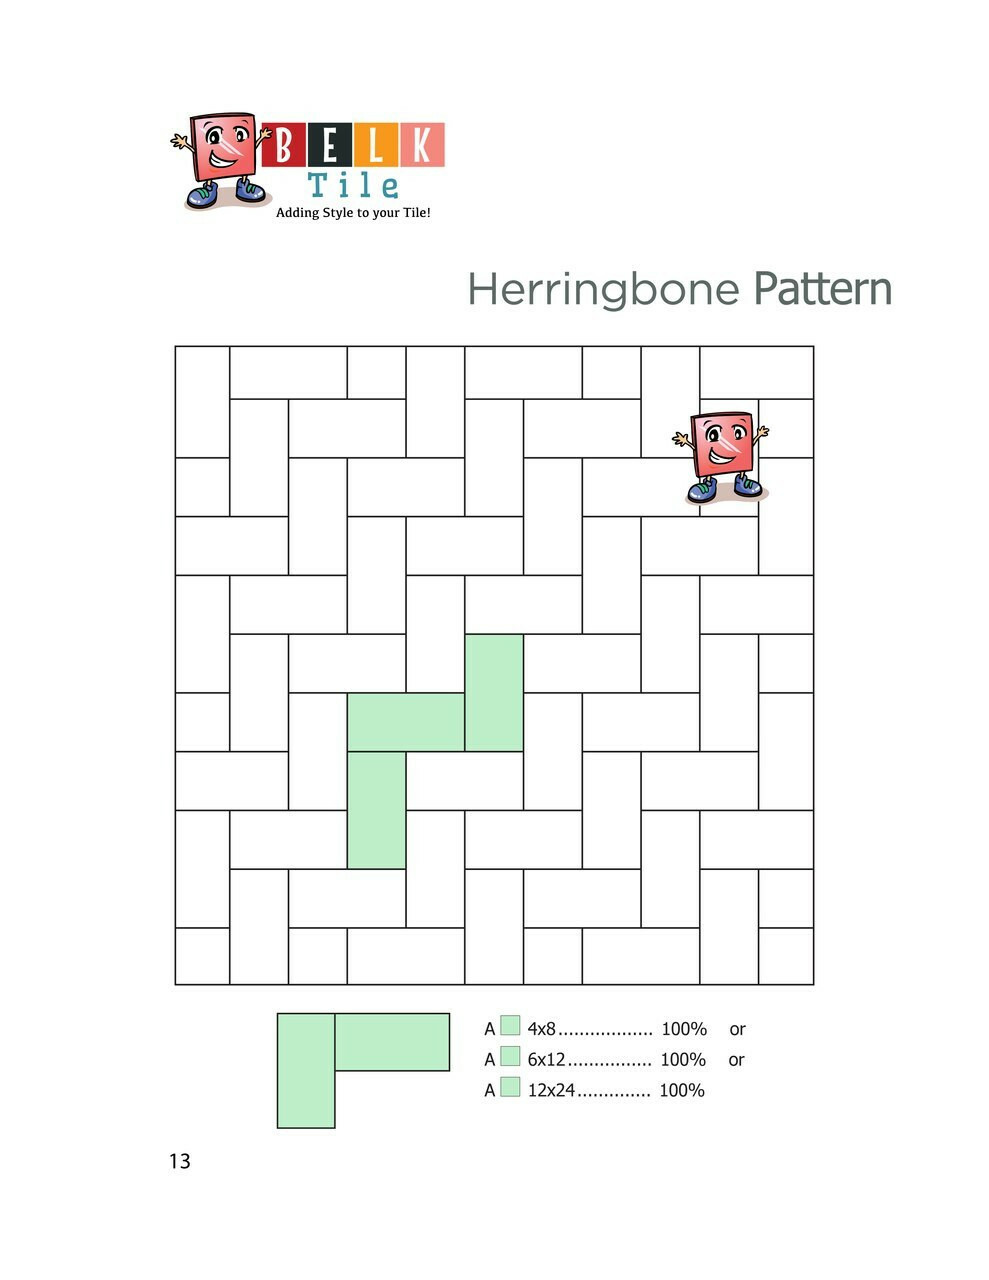 belk-tile-patterns-herringbone-floor-tile-pattern.jpg